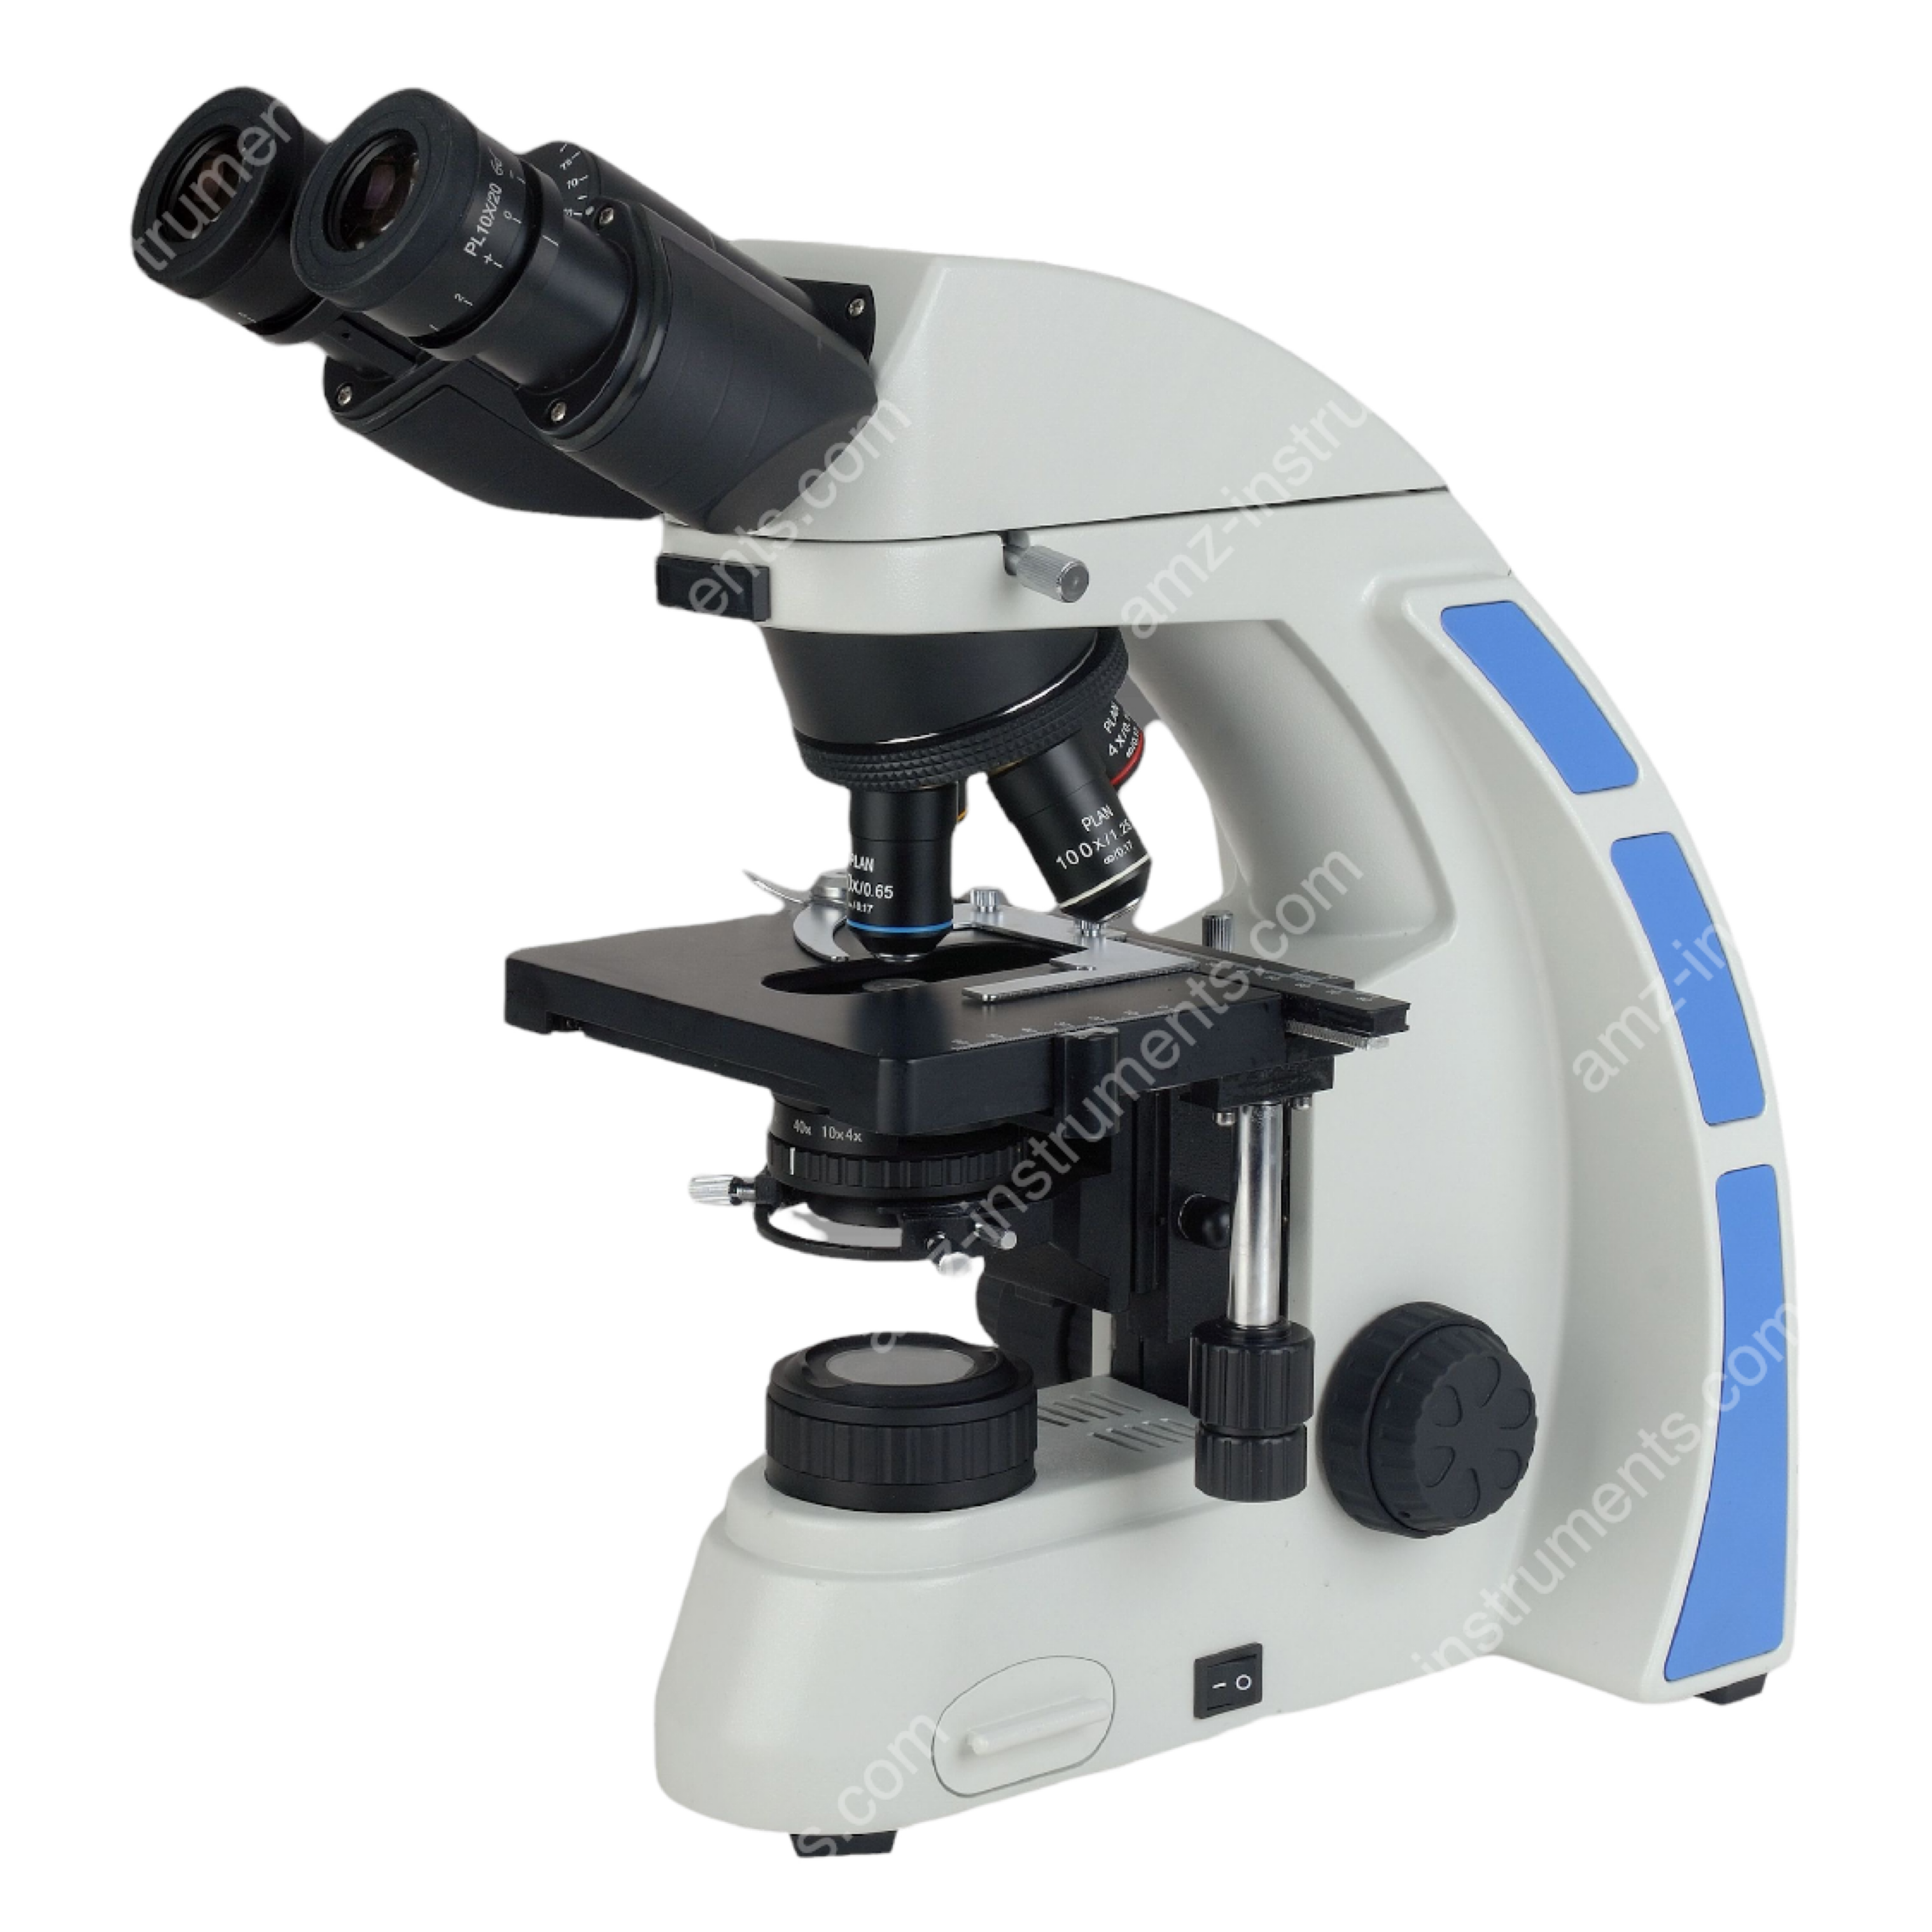 NK-X30B series biological microscope